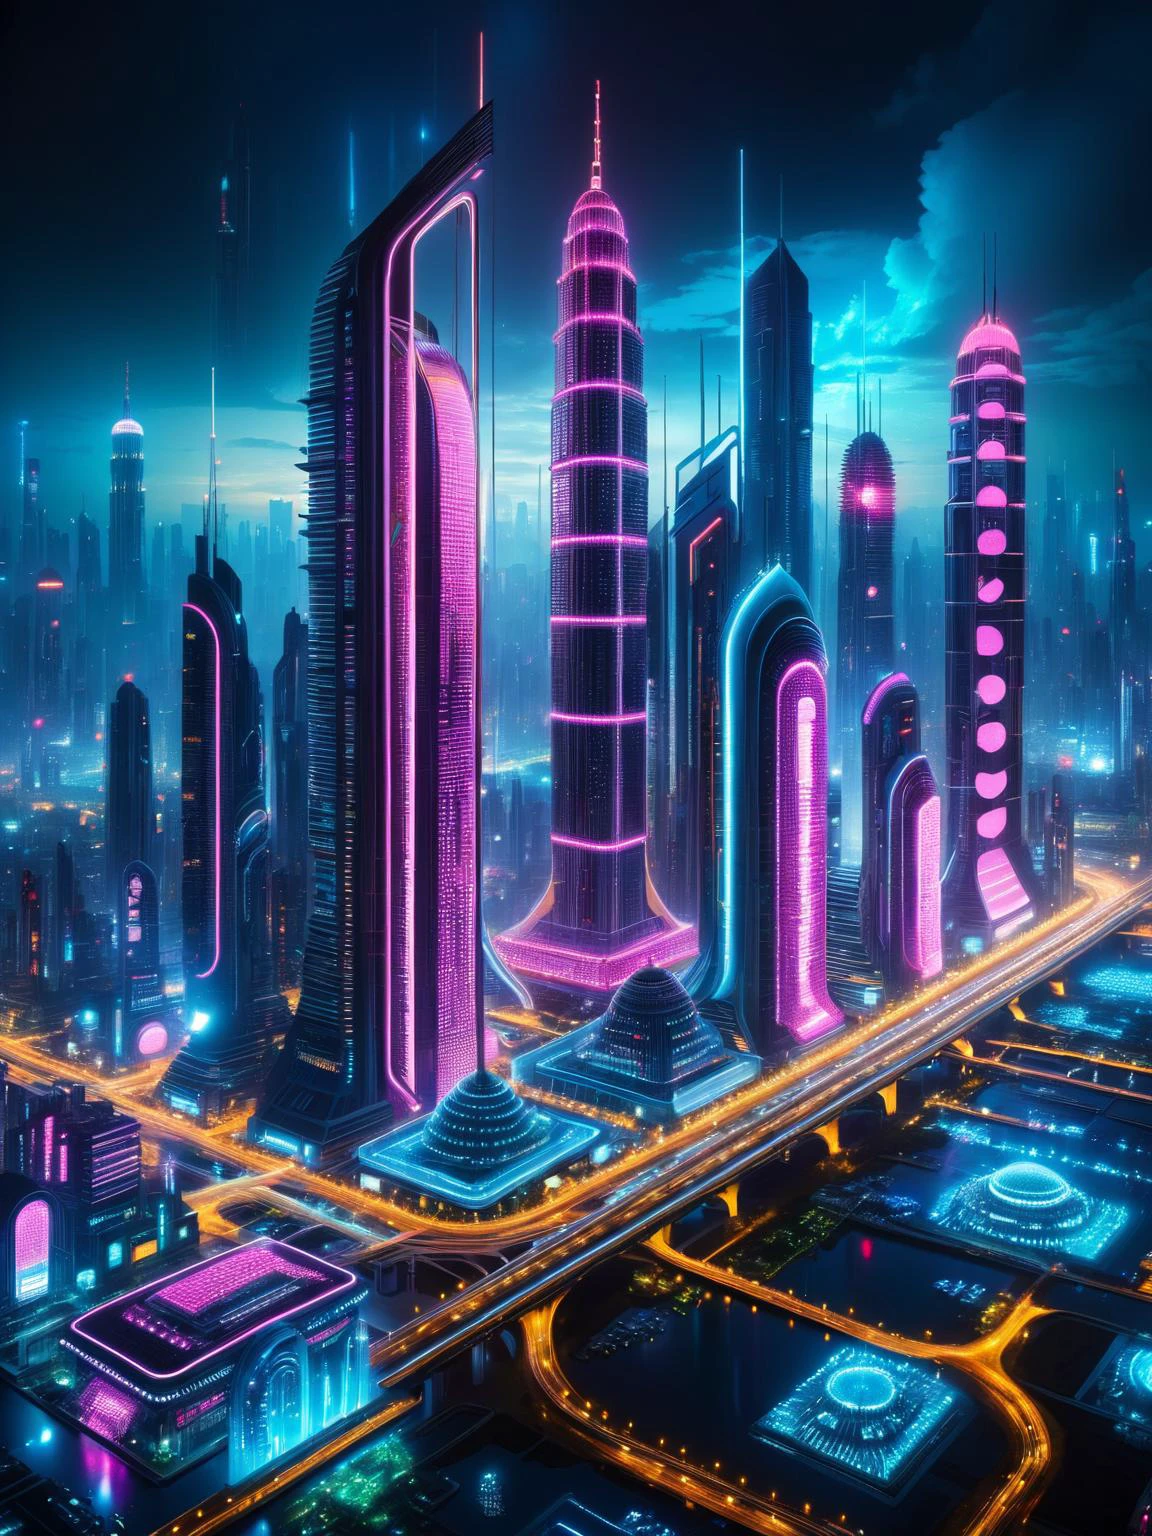 Futuristische Stadt bei Nacht, beleuchtet mit lebendigen RAL-LED-Lichtern, präsentiert surreale Architektur und Cyberpunk-Ästhetik.